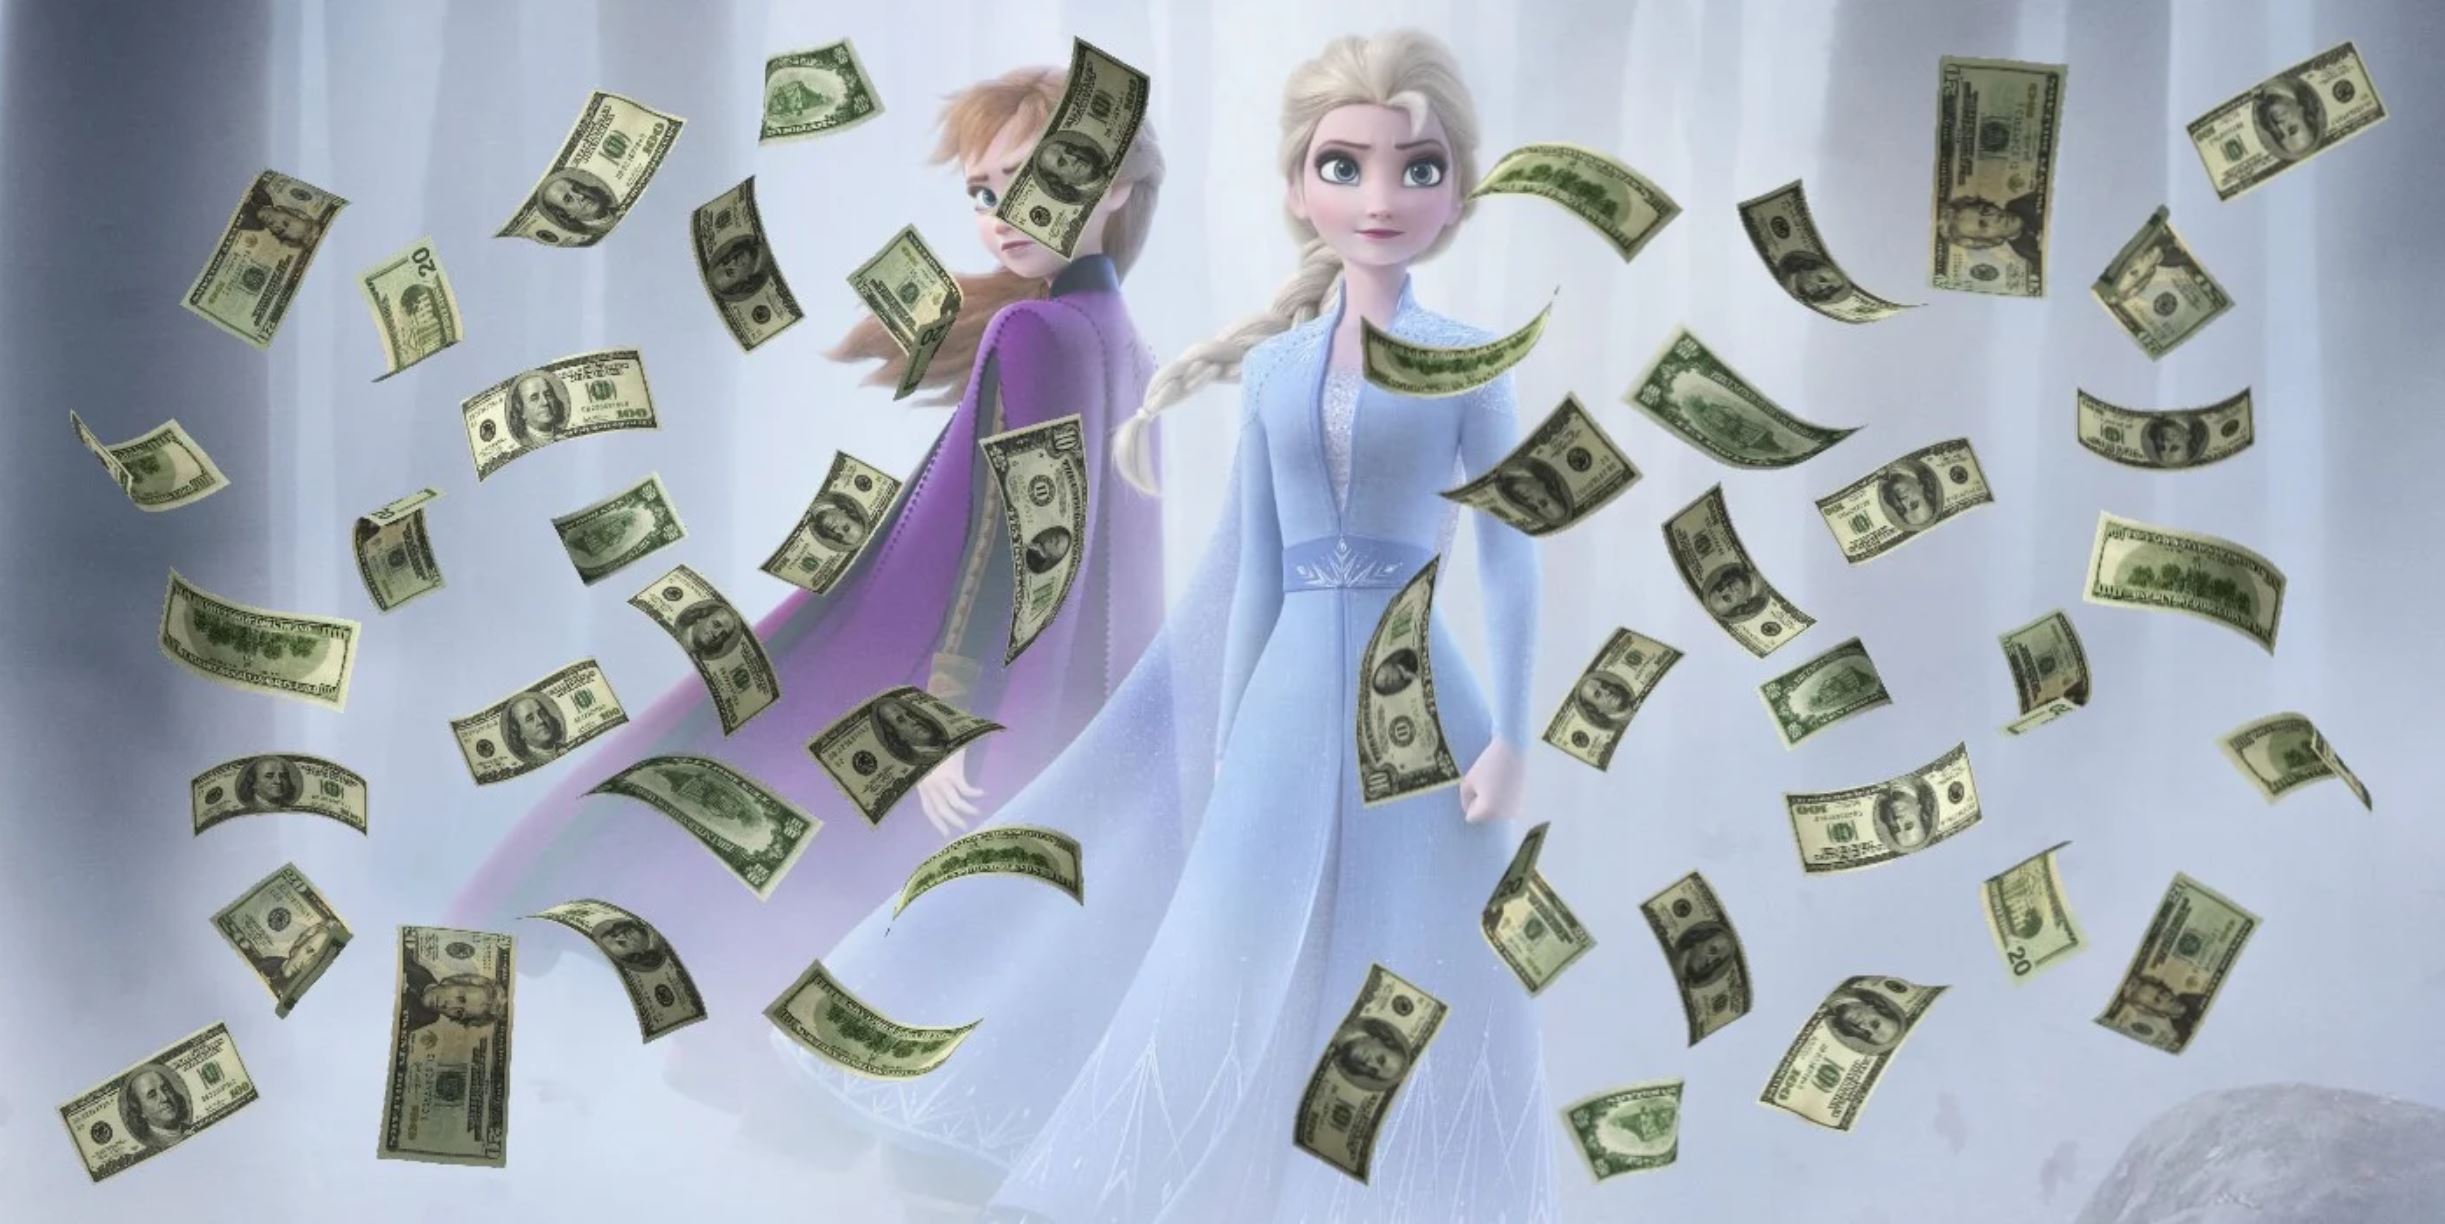 Frozen 2, müthiş ilk hafta performansıyla gişelere hızlı bir giriş yaptı